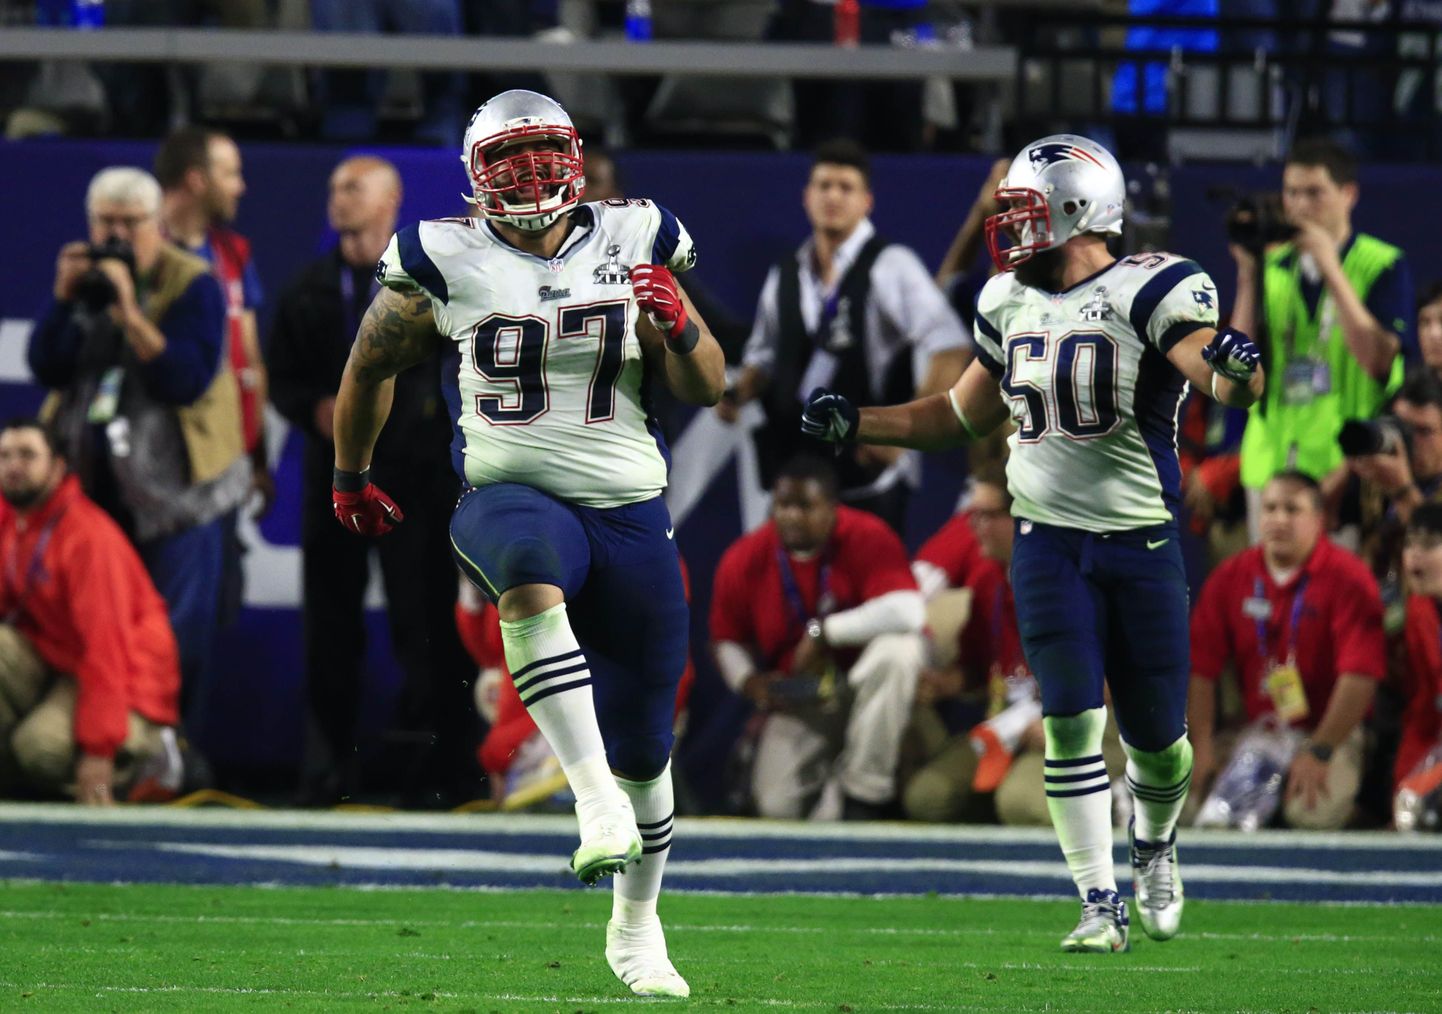 Super Bowli tänavuseks võitjaks krooniti New England Patriots, kes alistas esikohamängus 28:24 tiitlikaitsja Seattle Seahawksi. Poolajal rõõmustas Phoenixis pealtvaatajaid Katy Perry.